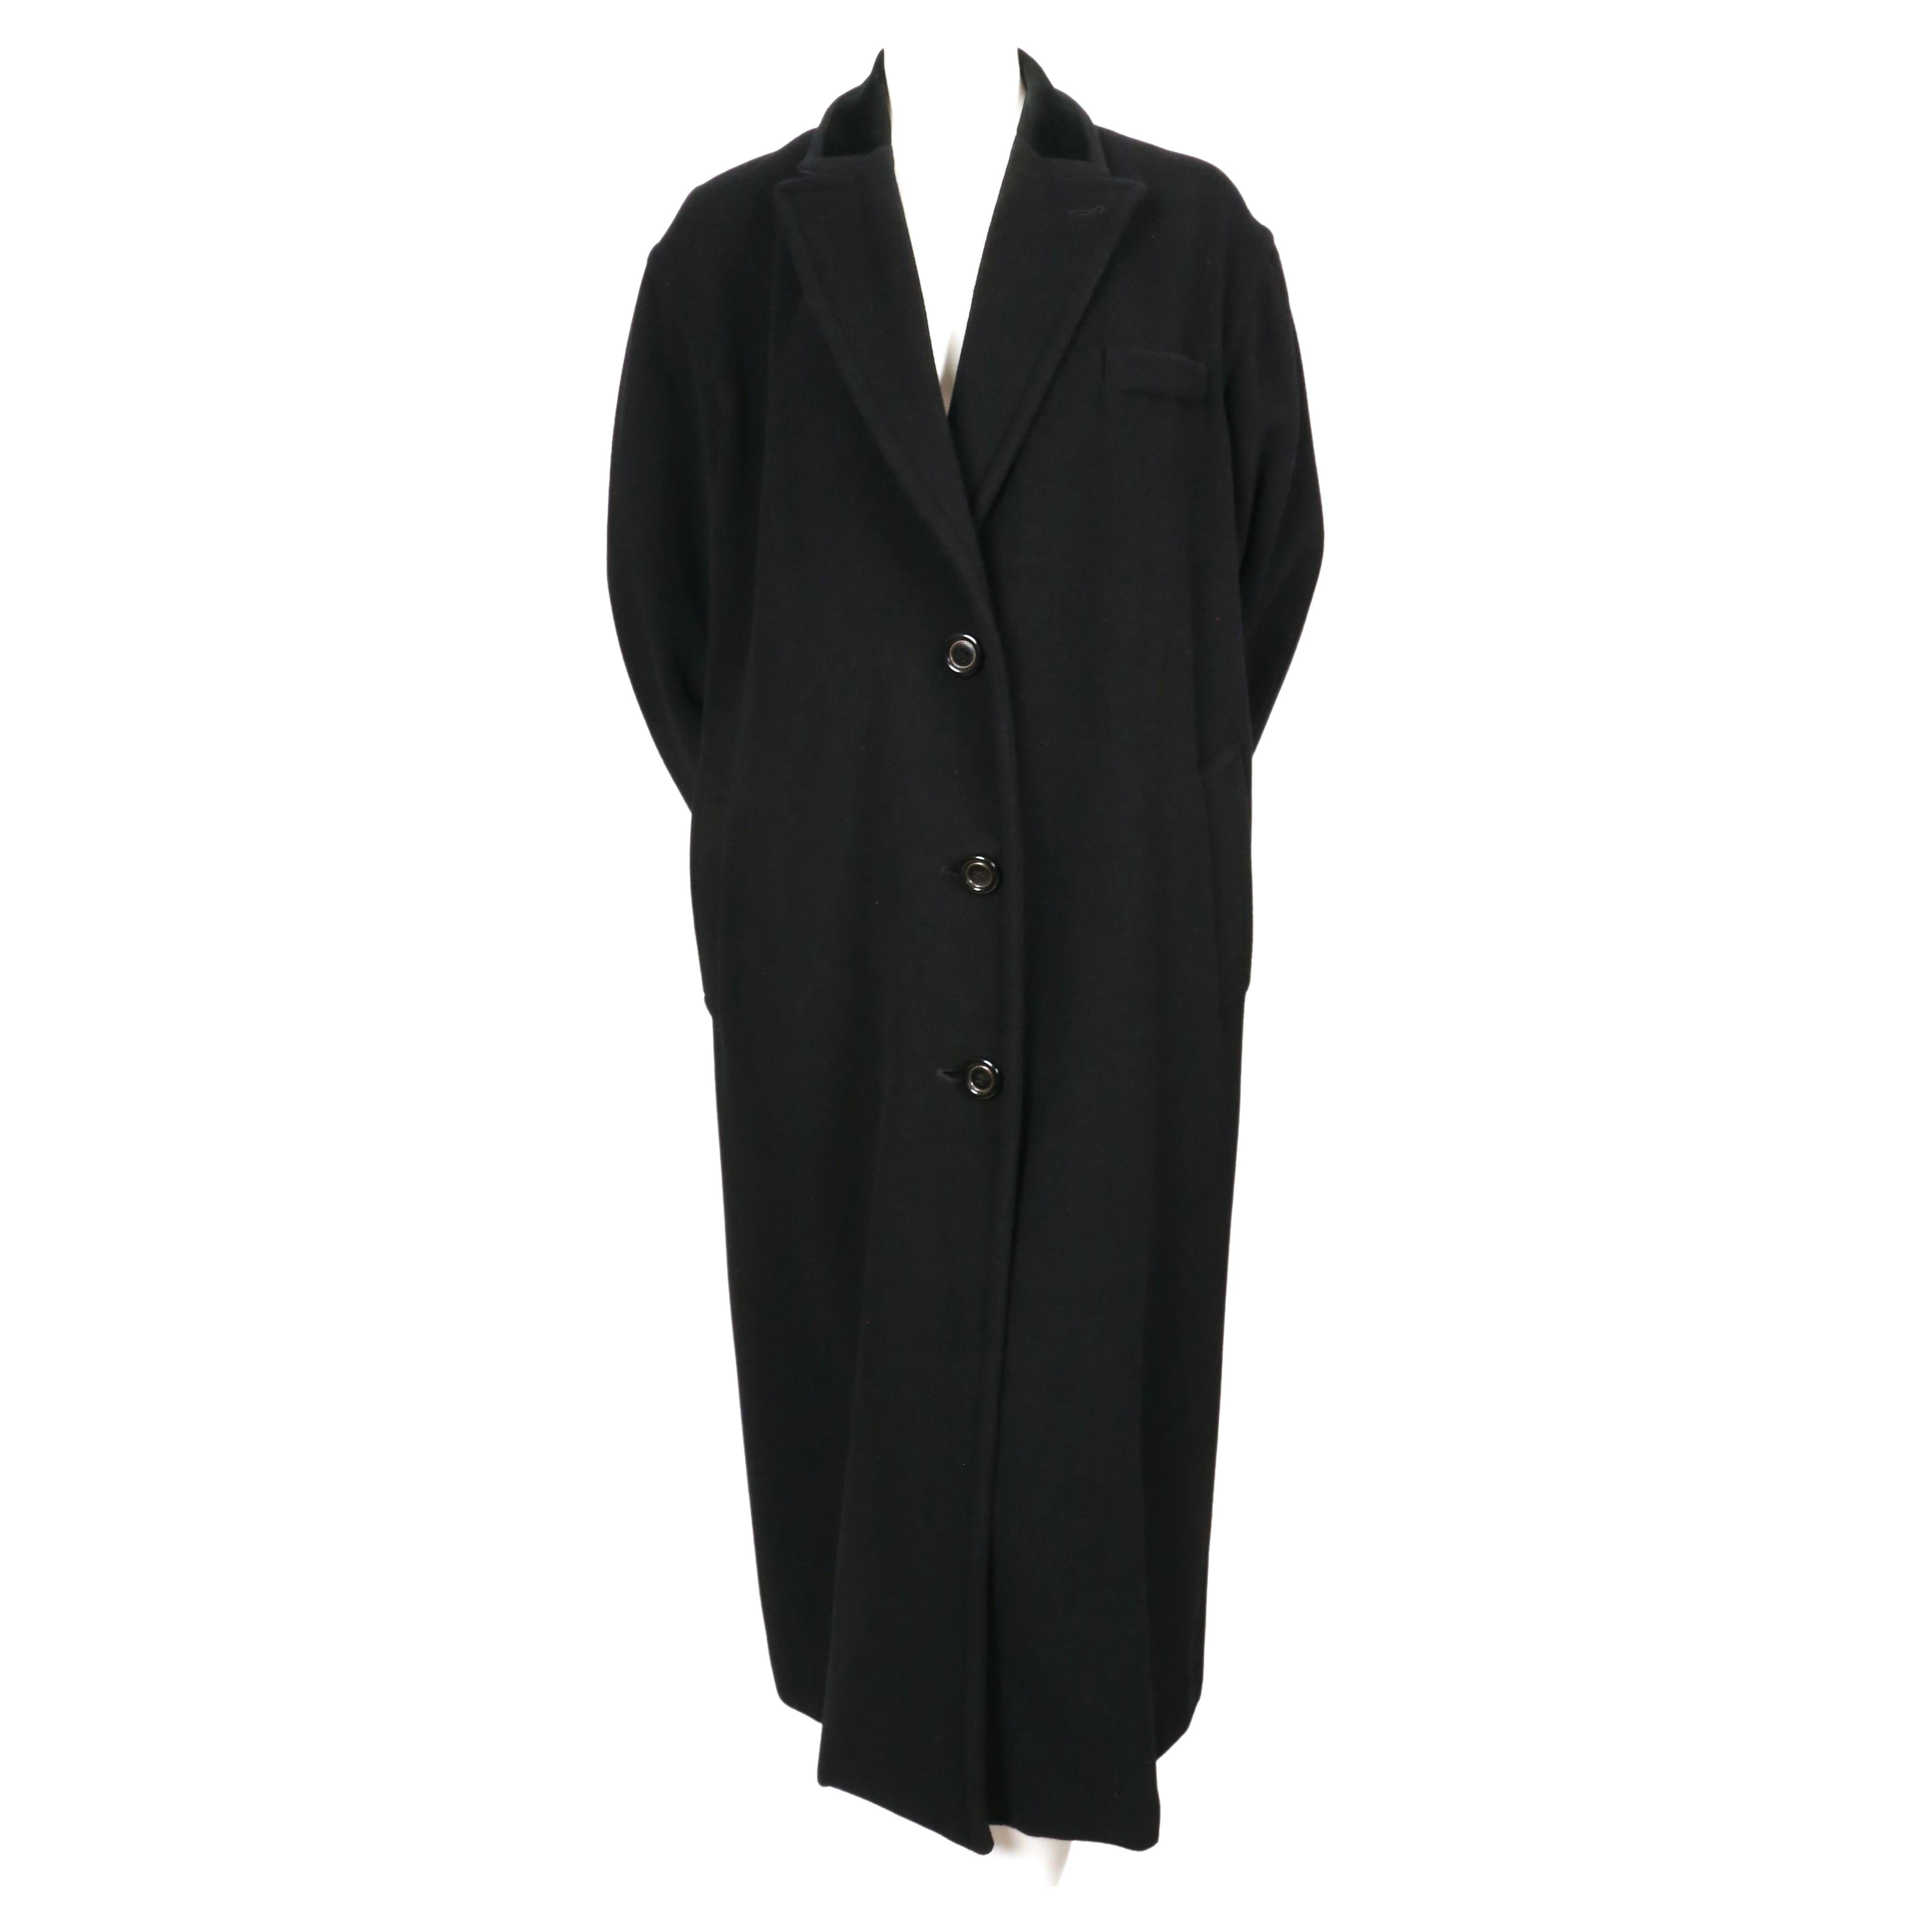 Übergroßer, schwarzer Mantel aus Mohair und Wolle mit Samtbesatz, entworfen von Jean Paul Gaultier im Herbst 1998. Etikettiert ein Französisch 36 jedoch hat es eine sehr übergroße Passform, so dass es eine 2-8 je nach gewünschten Passform passen